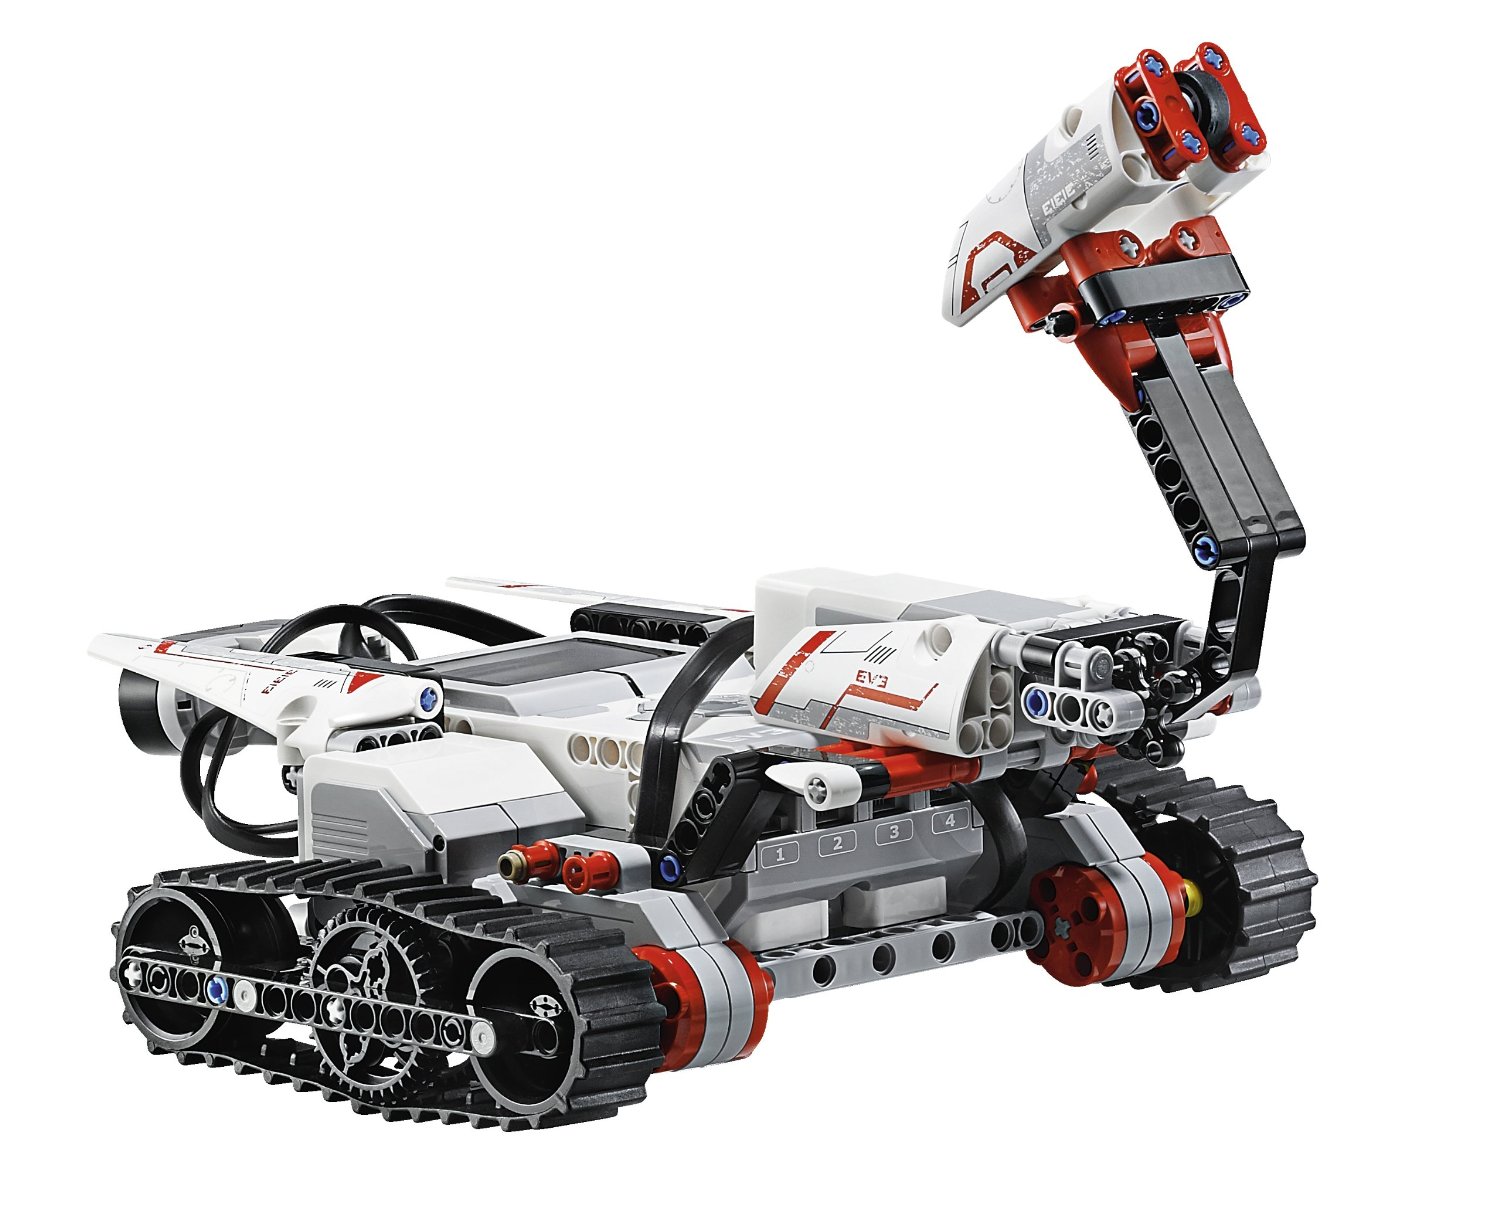 LEGO Mindstorm EV3 Figure: Robots EV3RSTORM et EXPLOR3R Fonctionnalités 500+ pièces et éléments techniques Processeur ARM9 et connectivité Internet 3